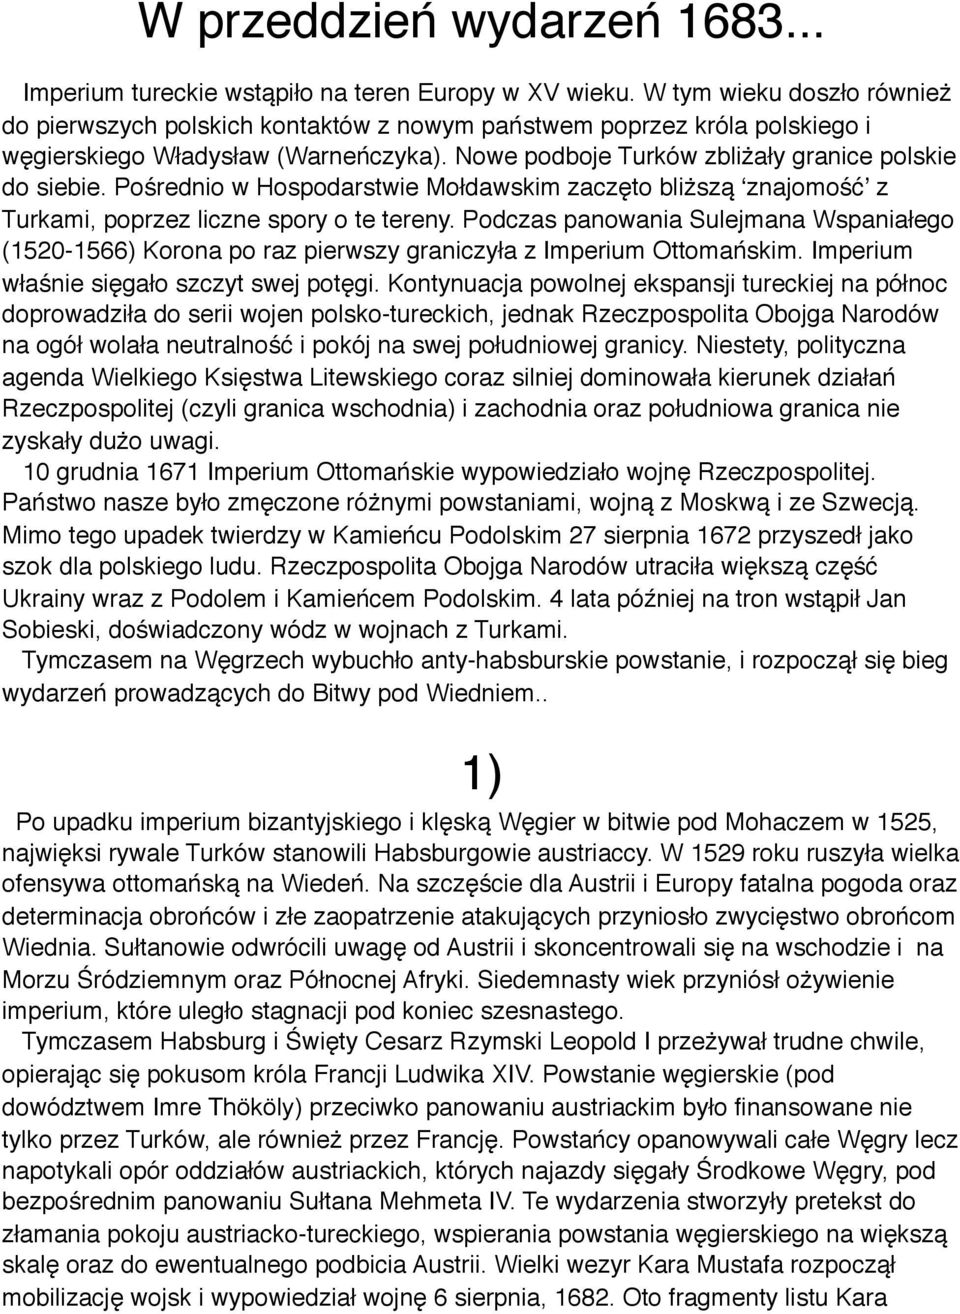 Pośrednio w Hospodarstwie Mołdawskim zaczęto bliższą ʻznajomośćʼ z Turkami, poprzez liczne spory o te tereny.